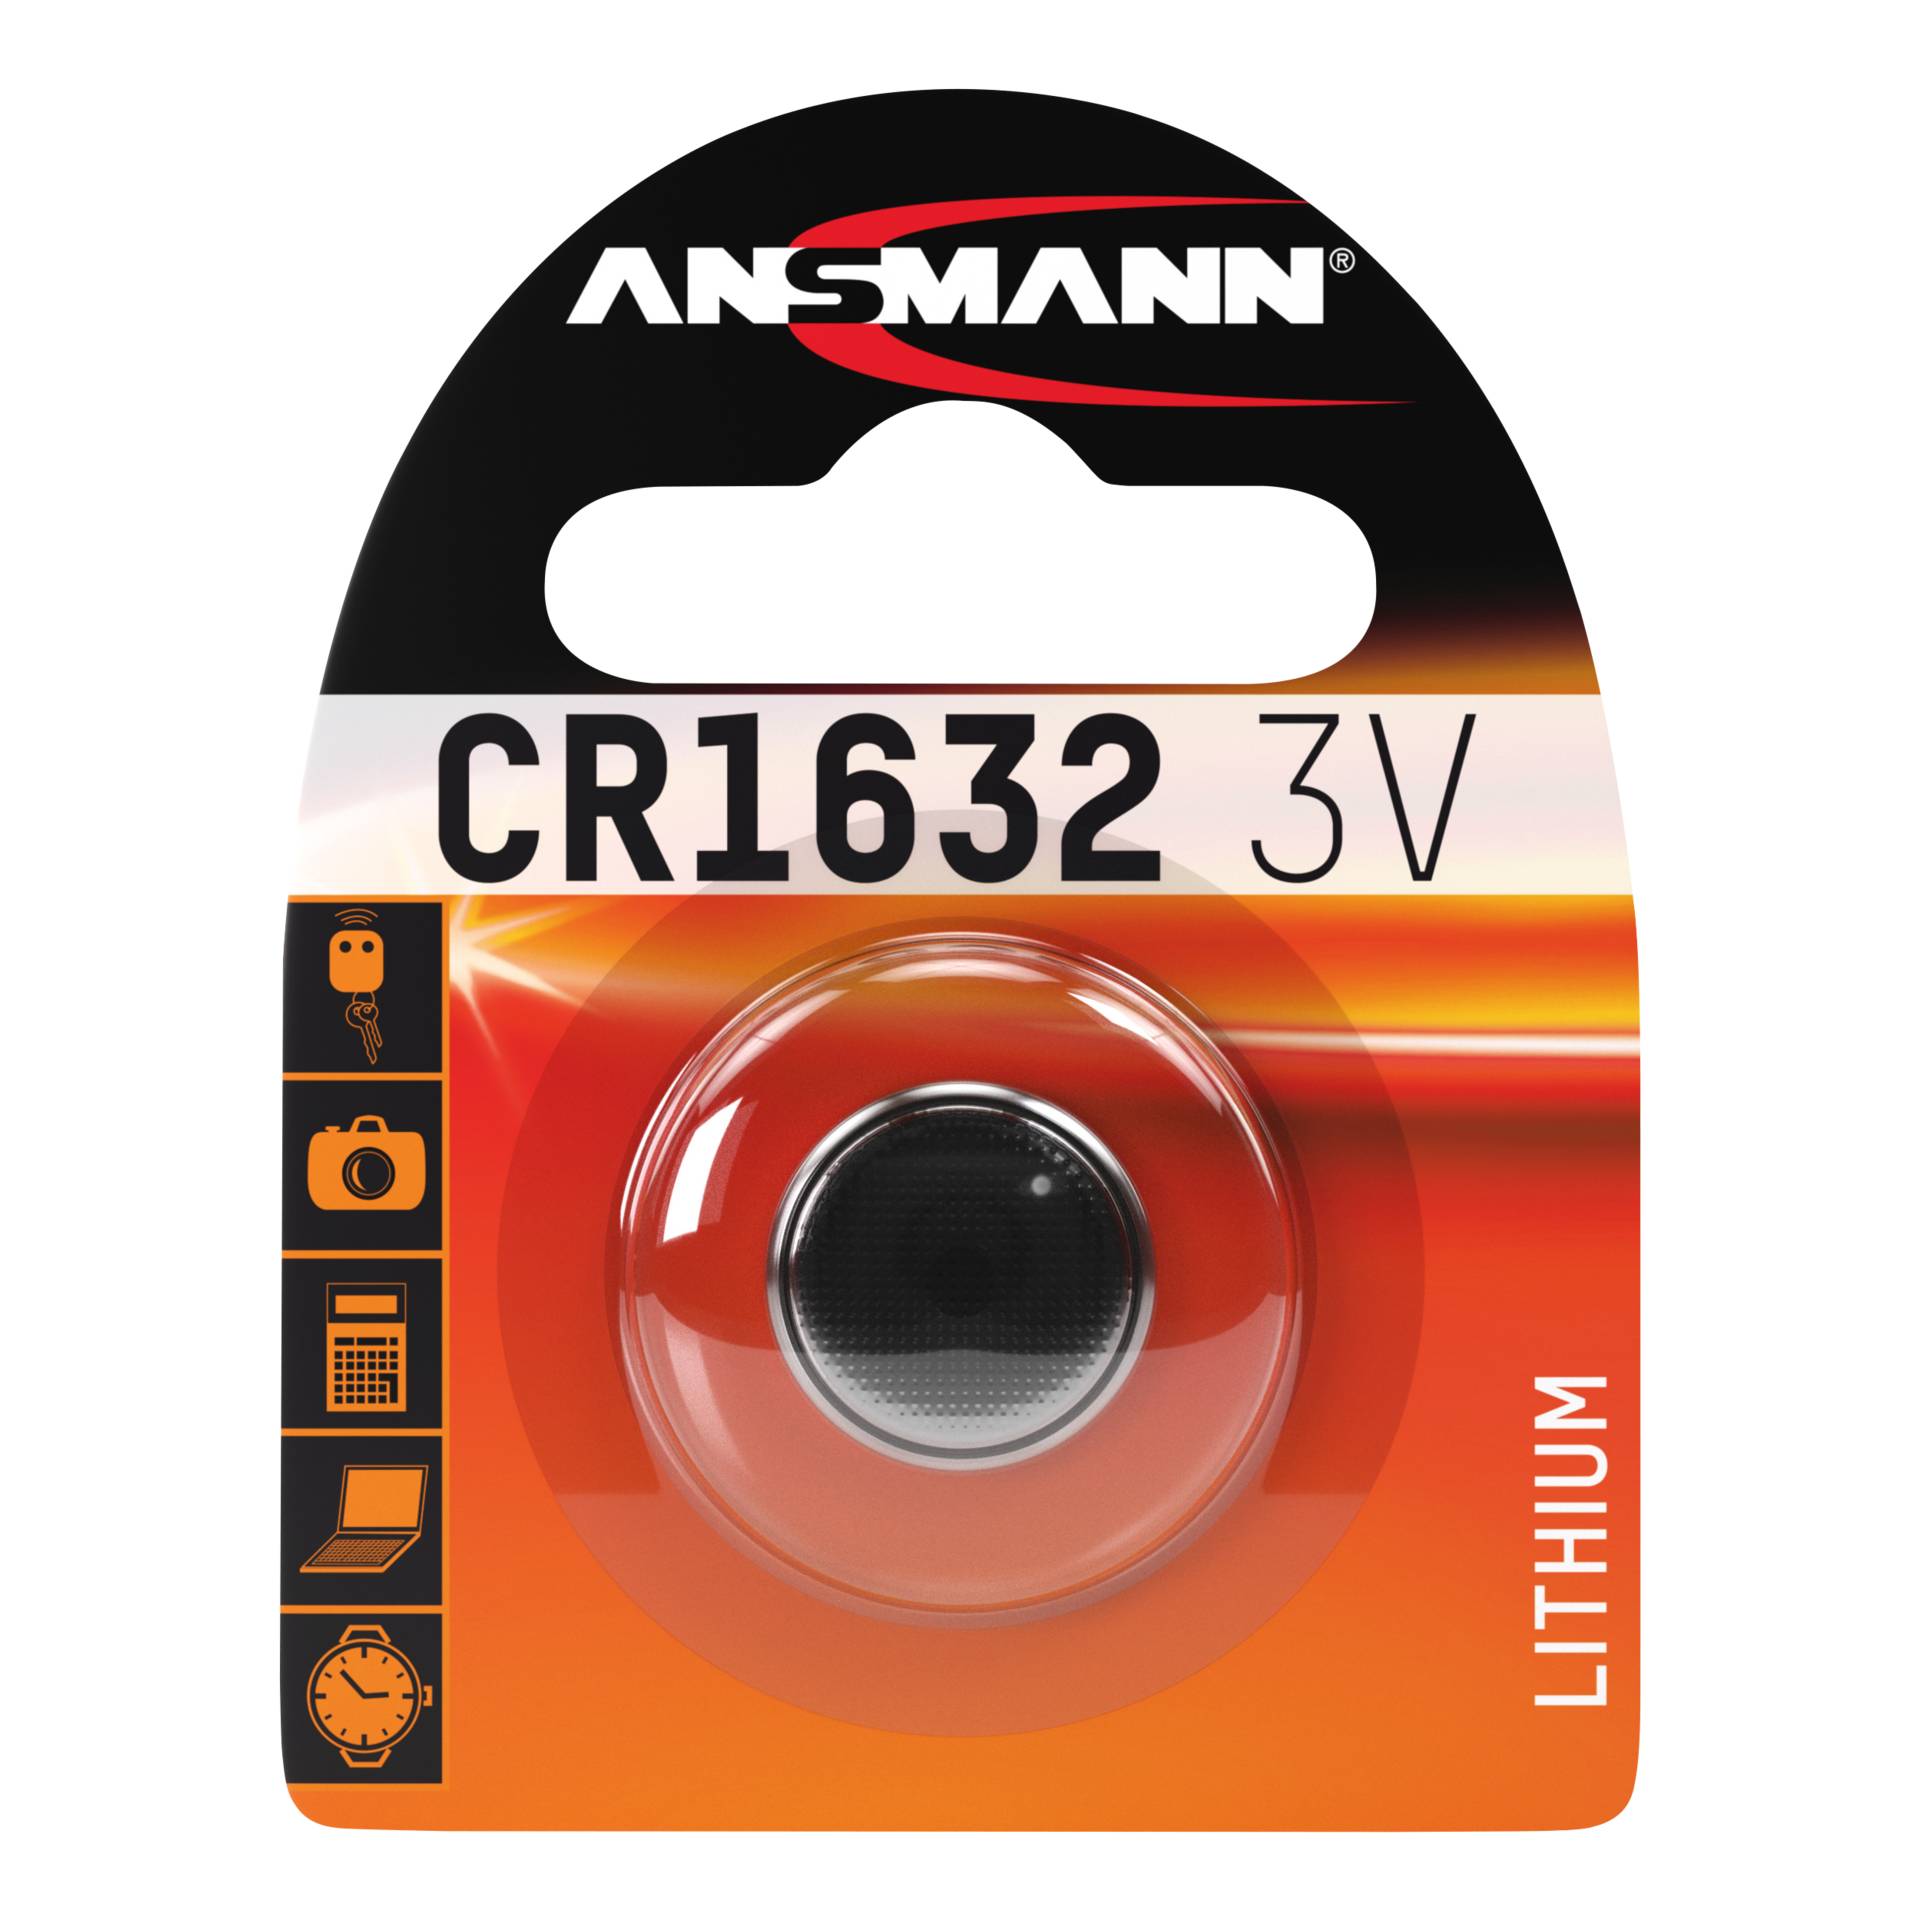 Ansmann CR 1632